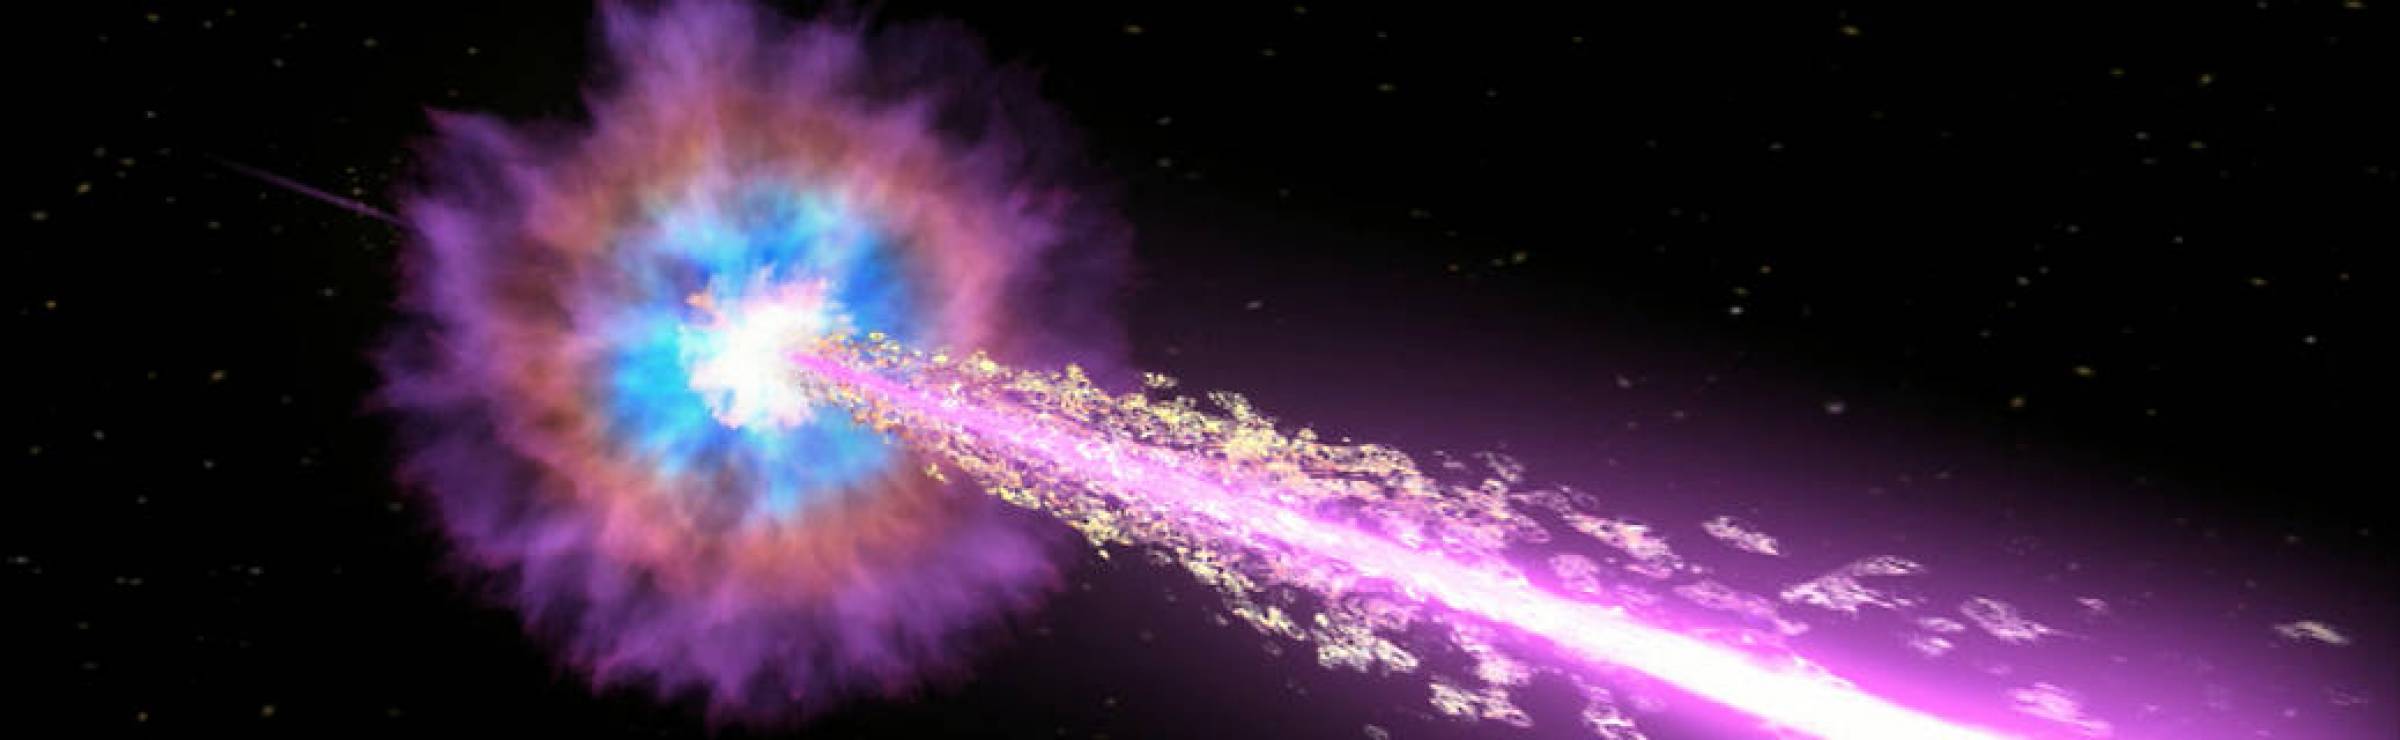 Les missions Swift et Fermi de la NASA détectent une explosion cosmique exceptionnelle